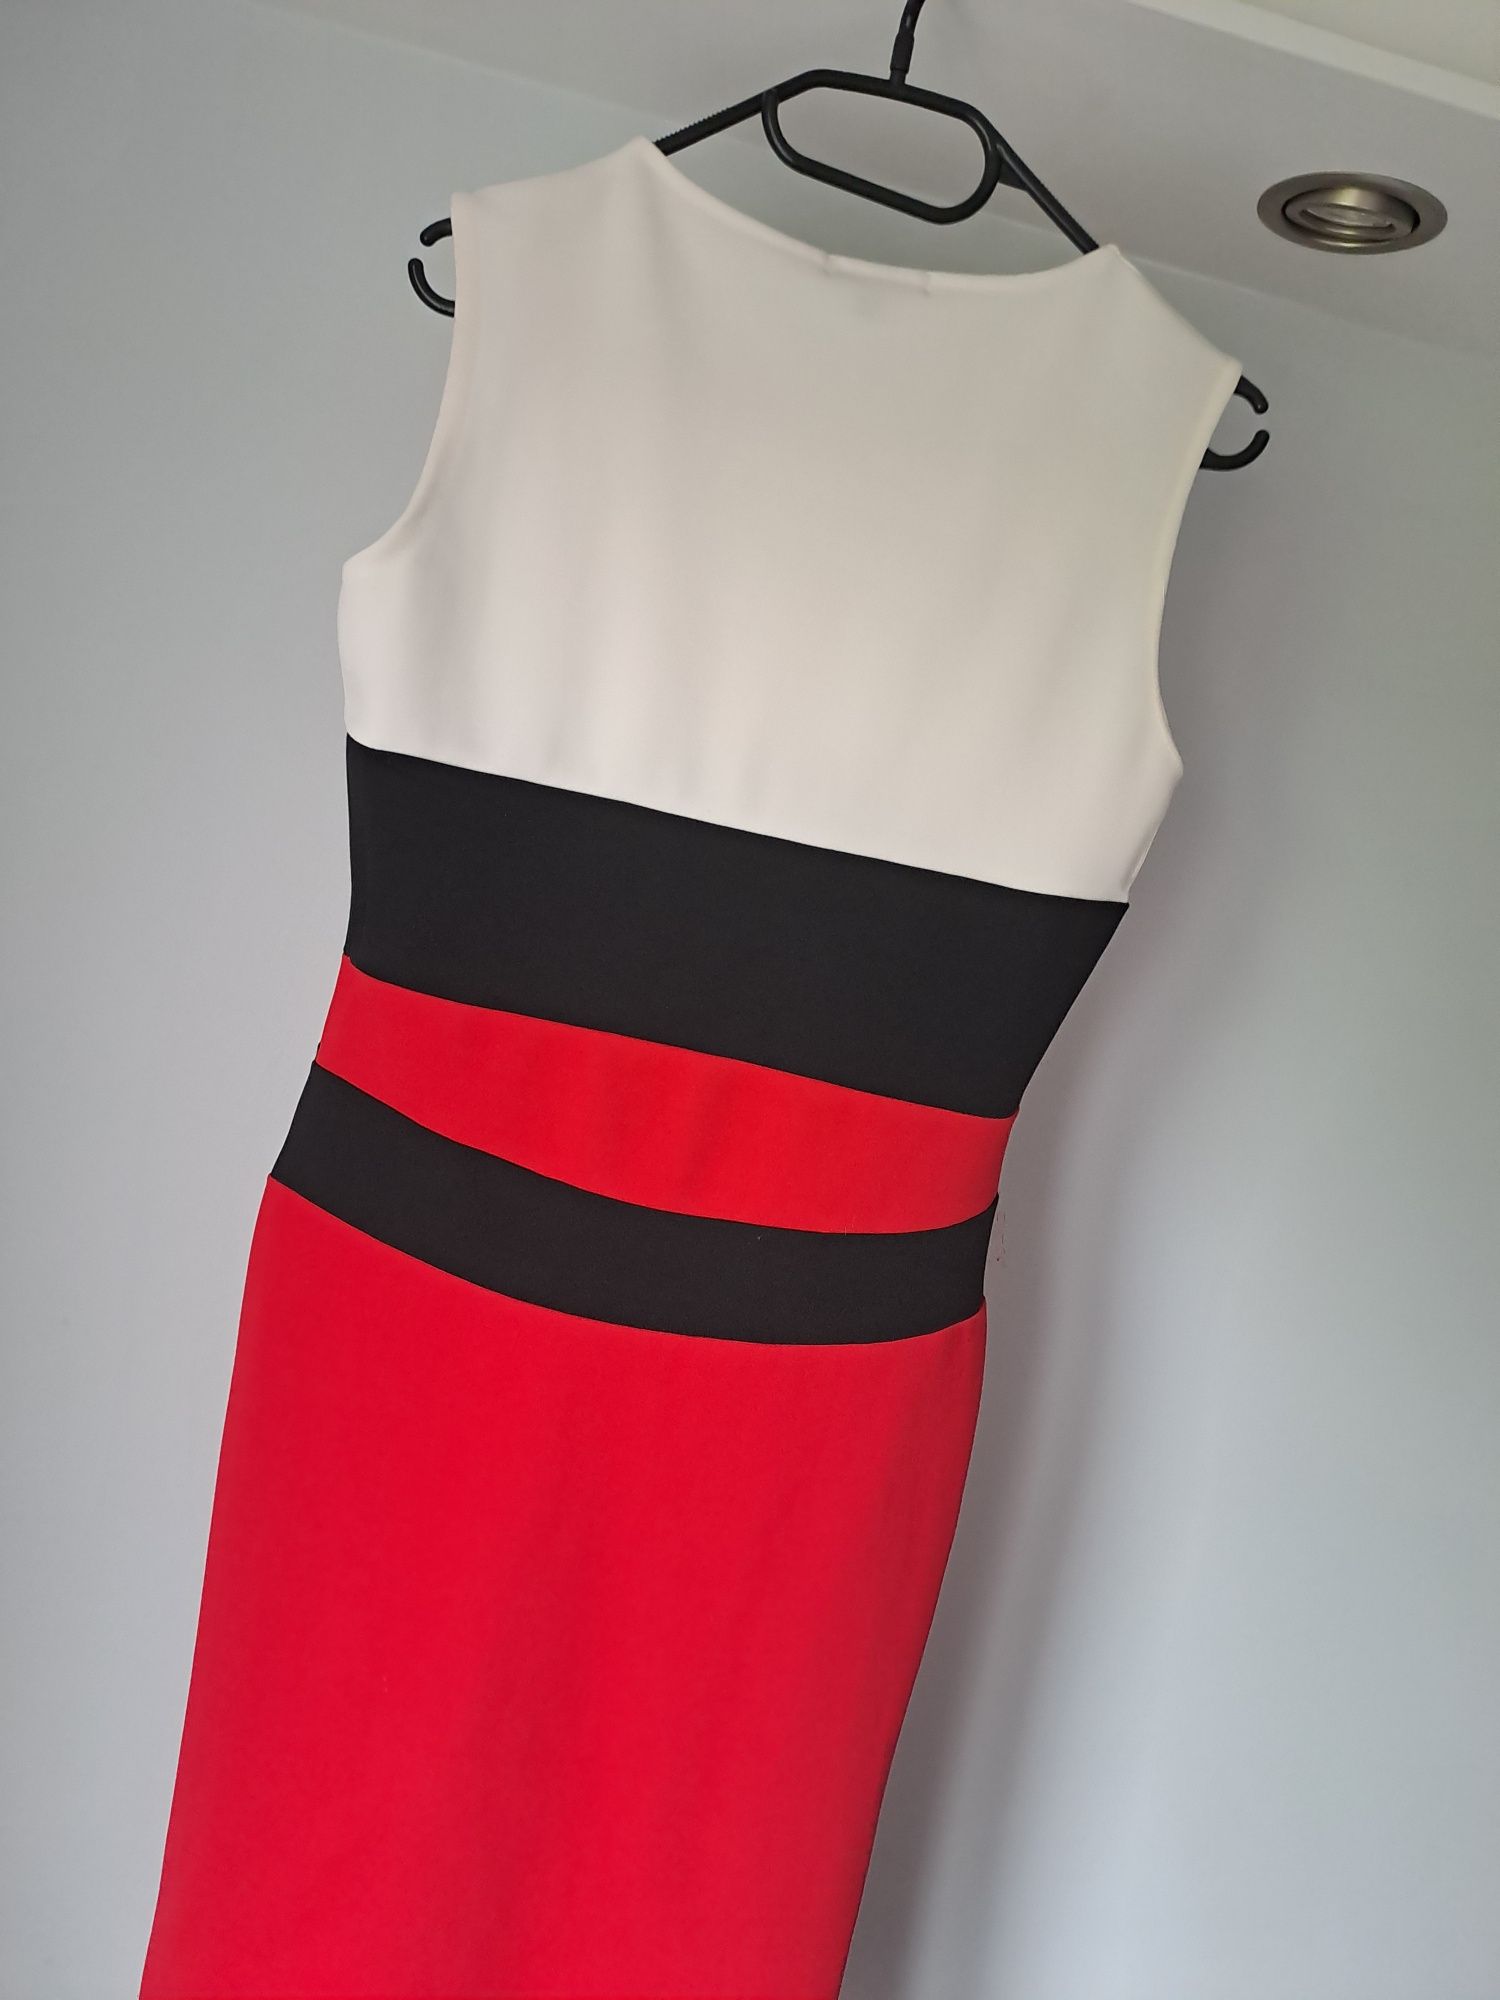 Dopasowana sukienka biało czerwono czarna Missi London M 38